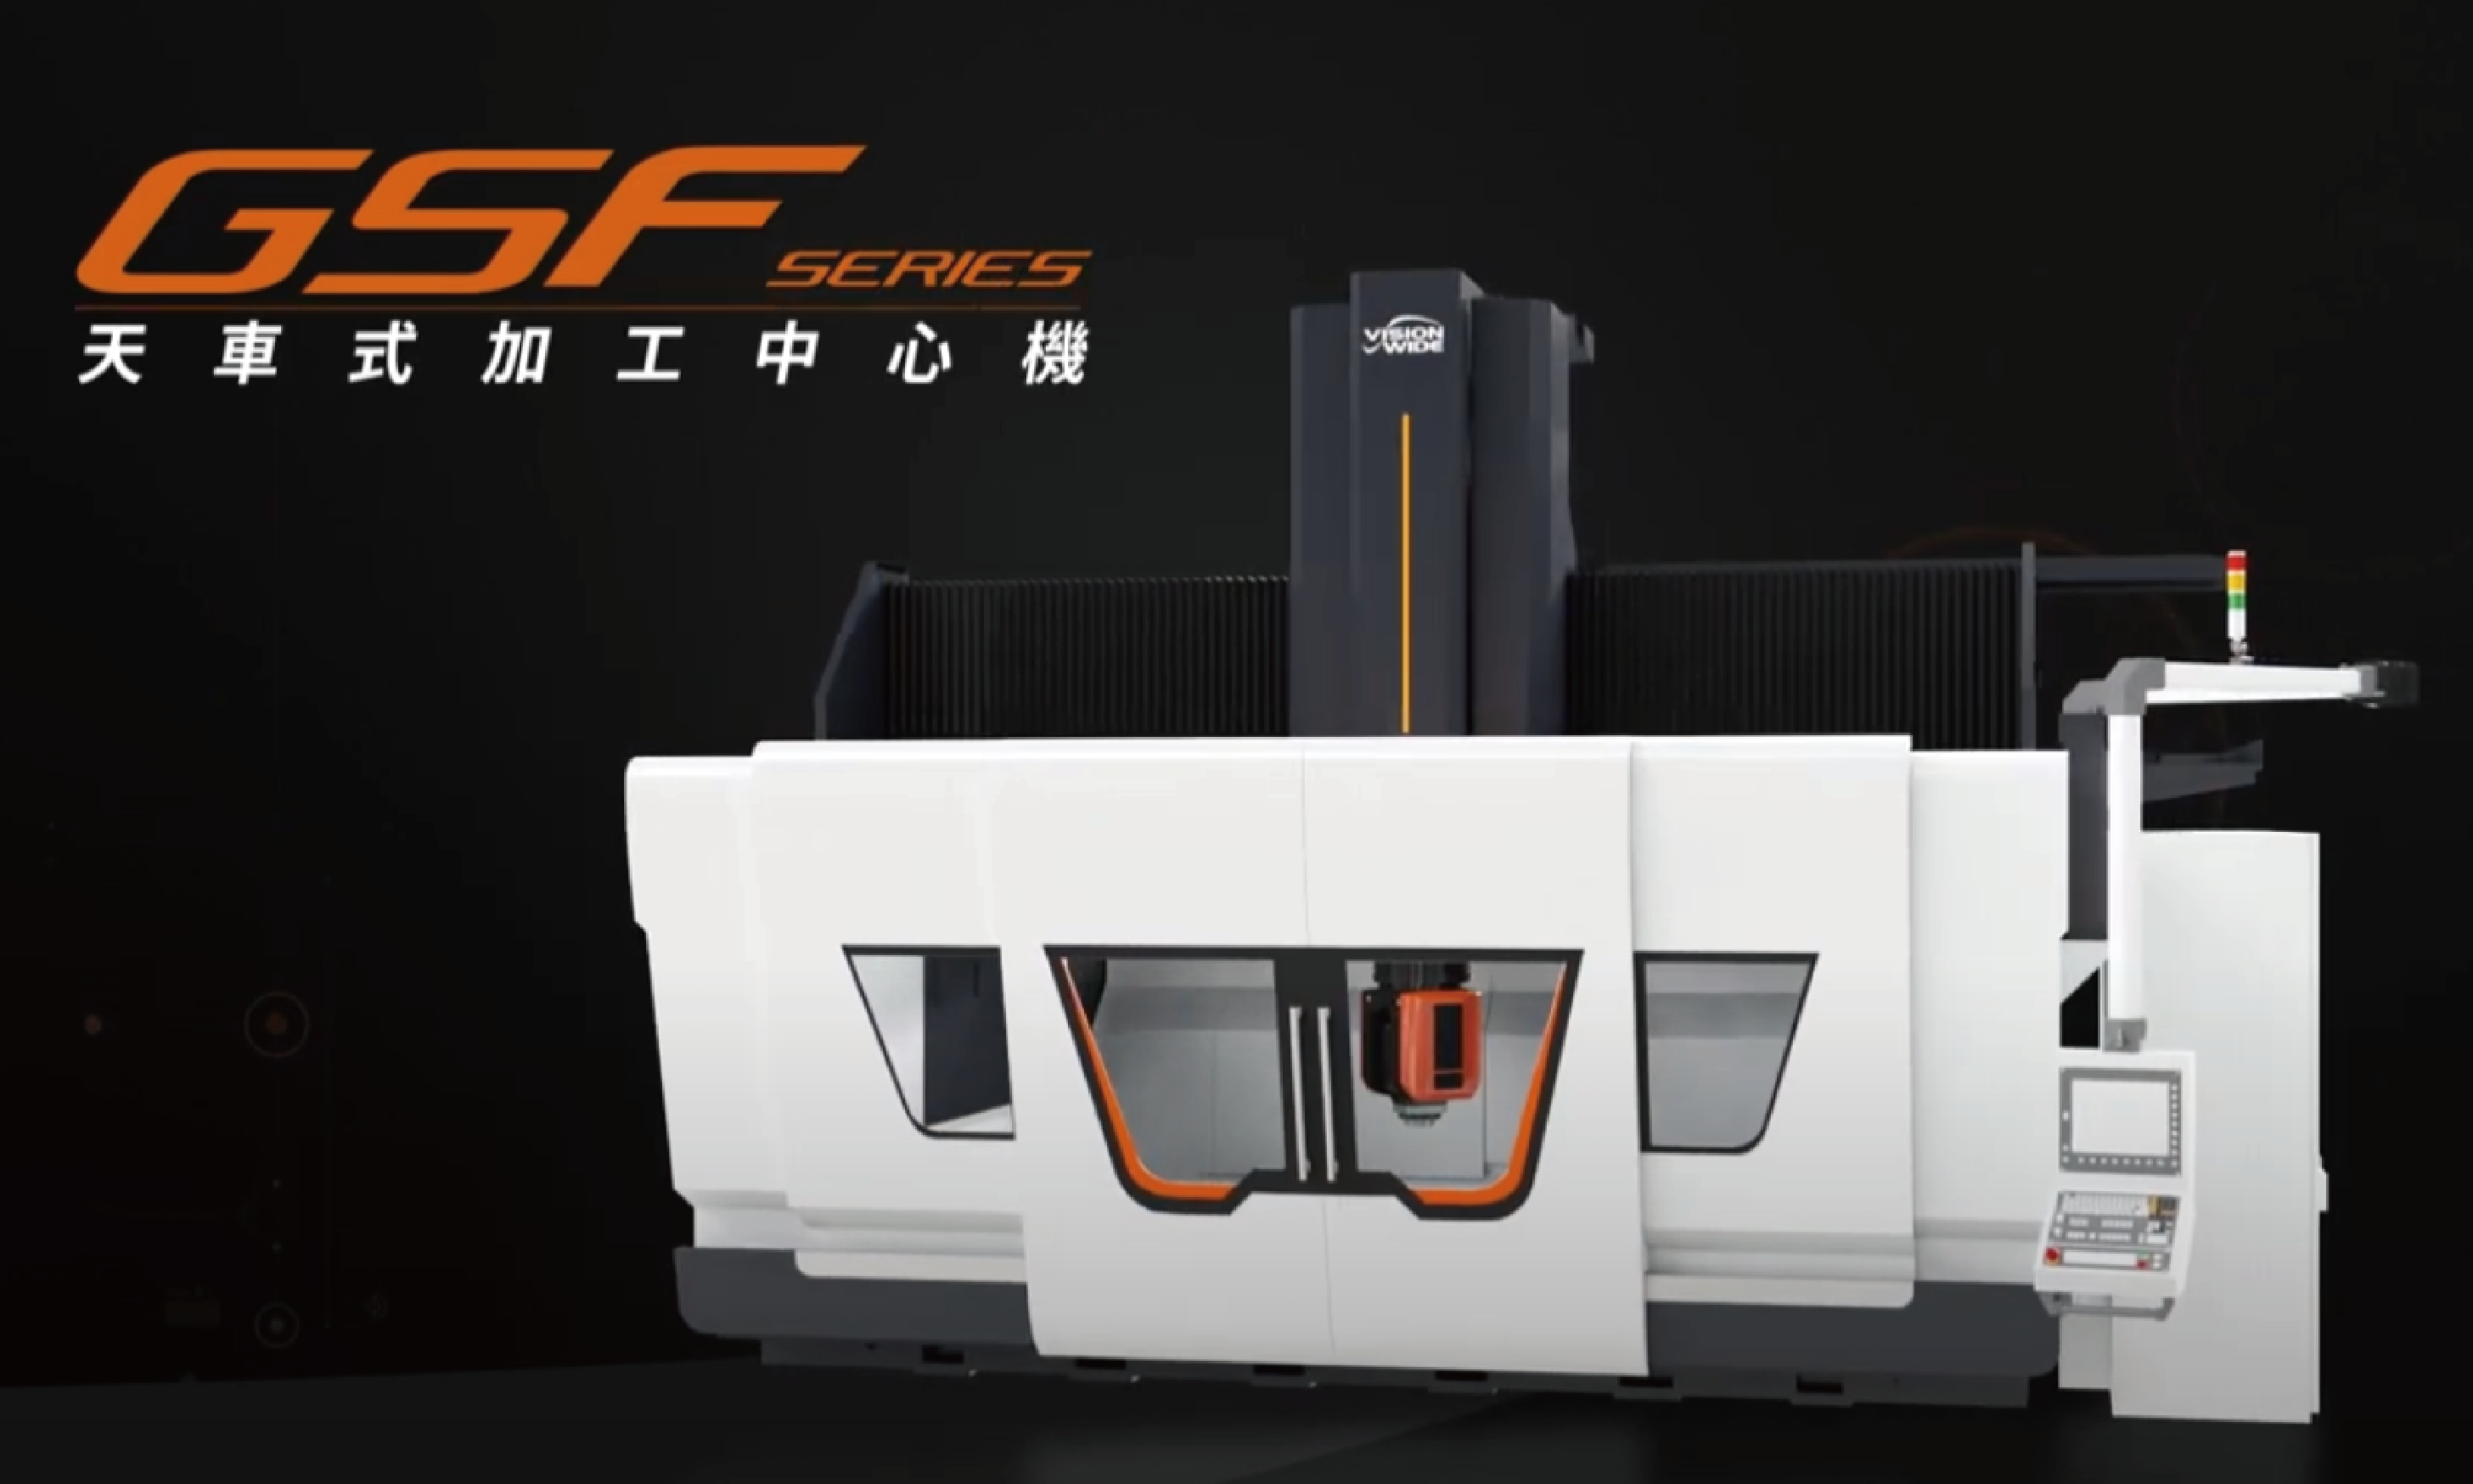 影片|GSF-5-axis Gantry Type Machining Center 天車型五軸加工中心機